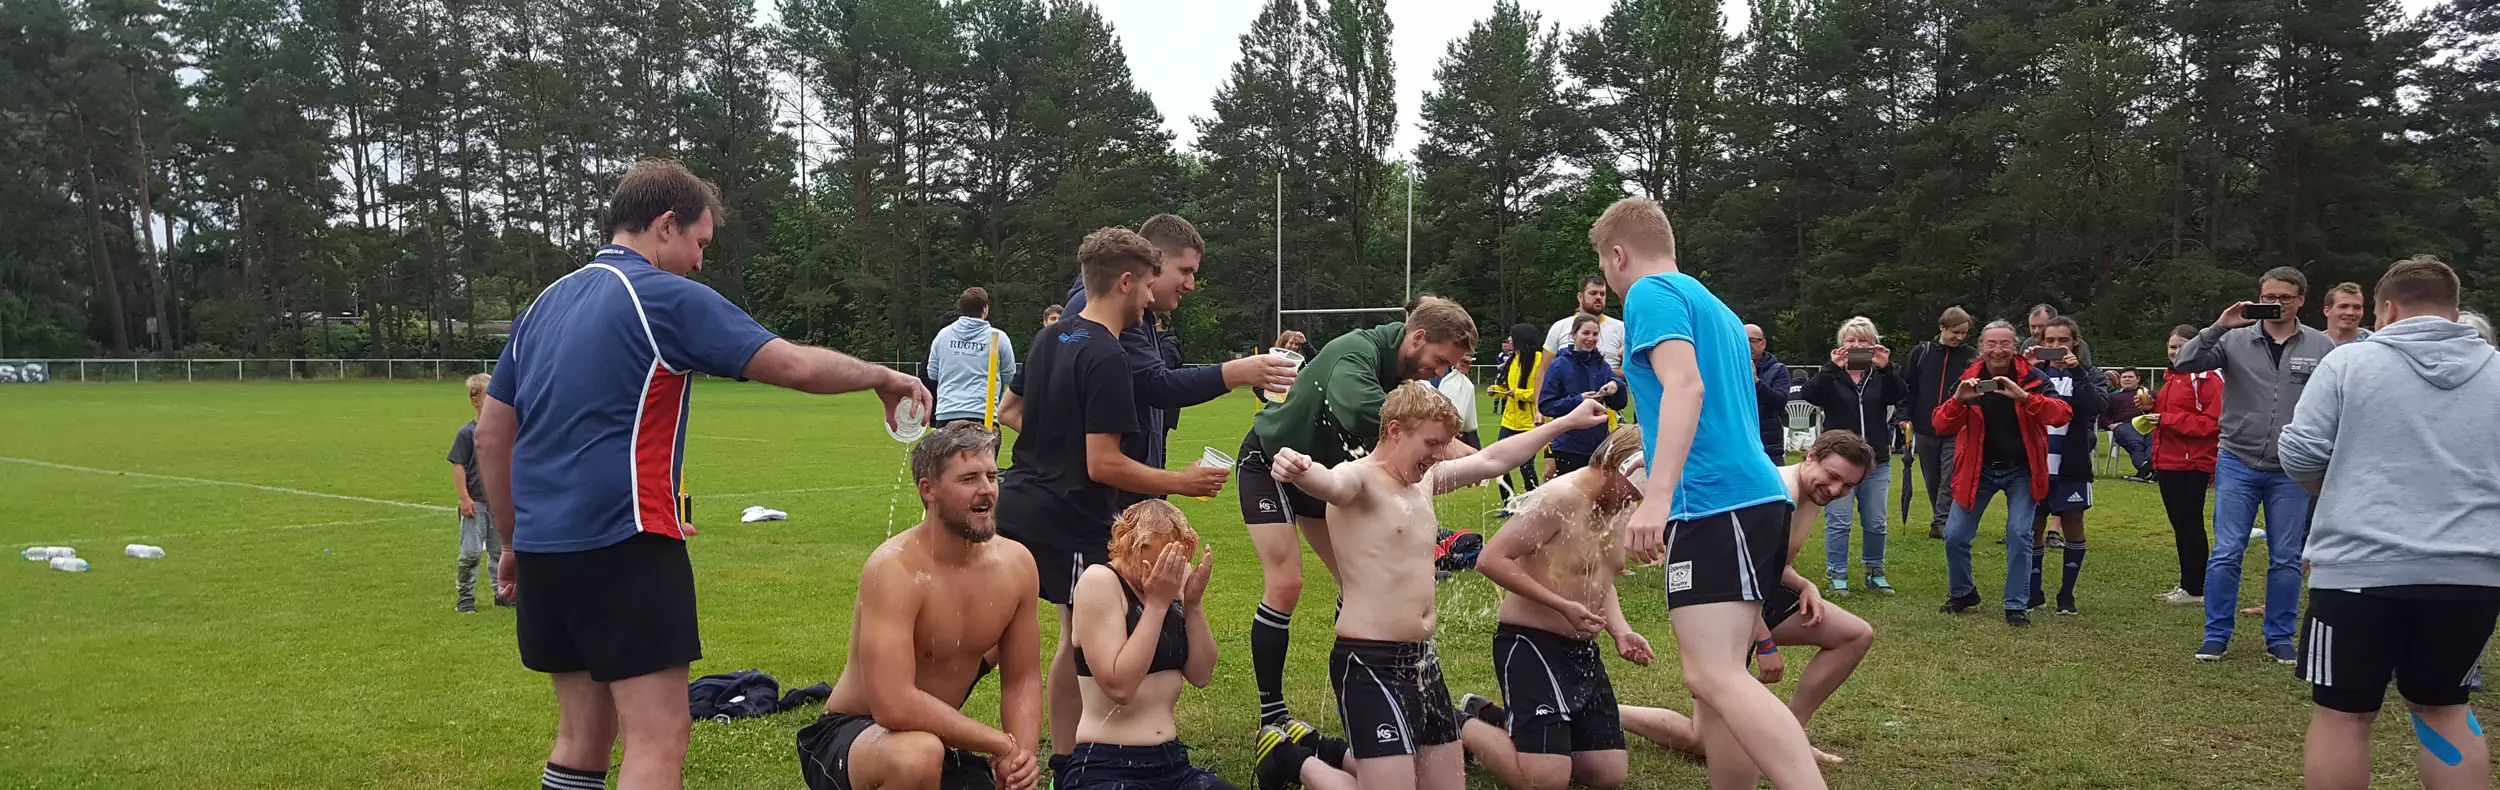 Rugby – USG Chemnitz